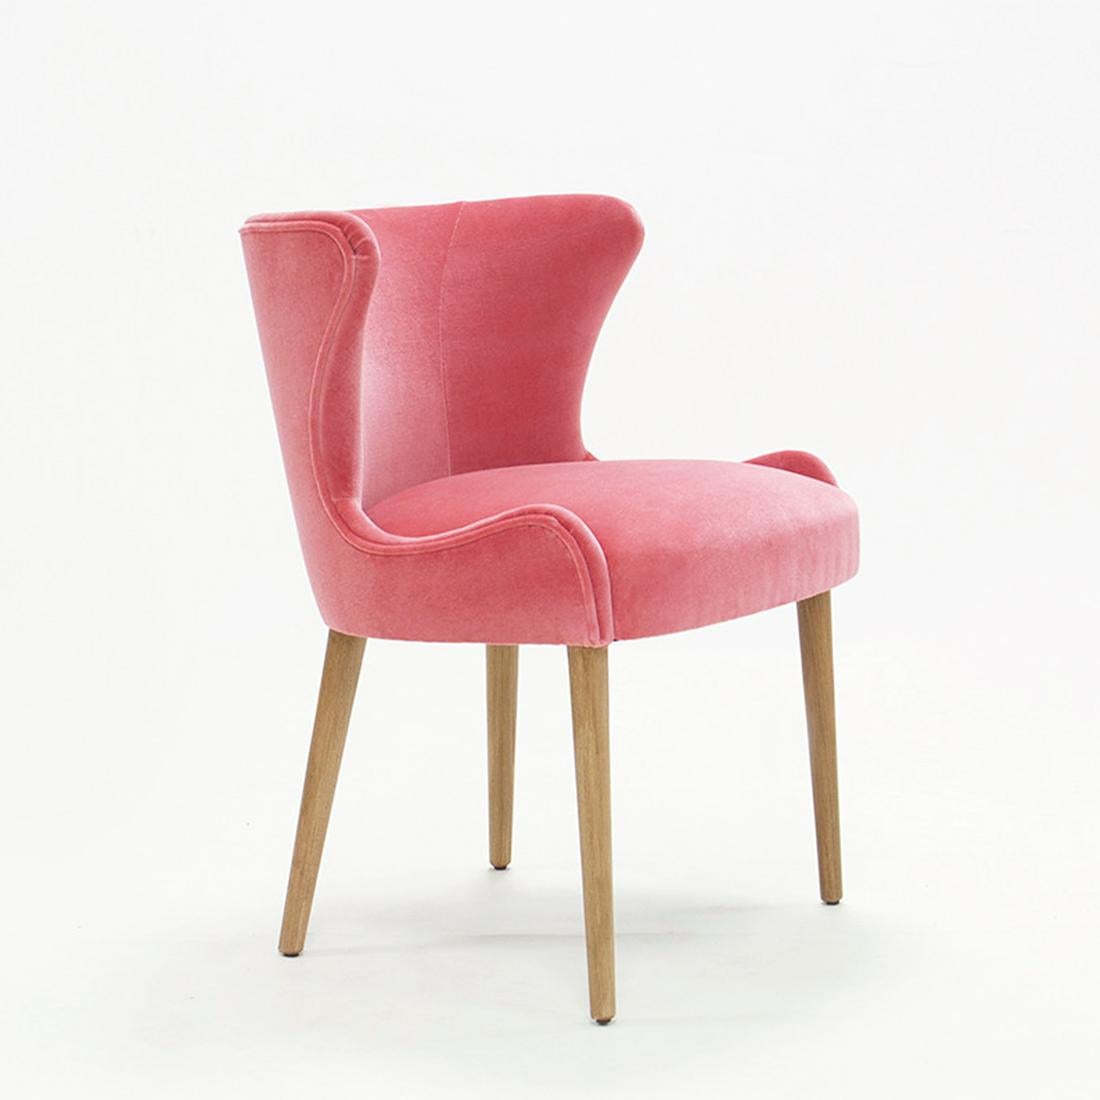 Stuhl Darling mit Struktur aus Massivholz, gepolstert
sitz und Rückenlehne, bezogen mit hochwertigem rubinrotem Samt 
stoff. Auf Anfrage auch mit anderen Stoffen erhältlich.
 